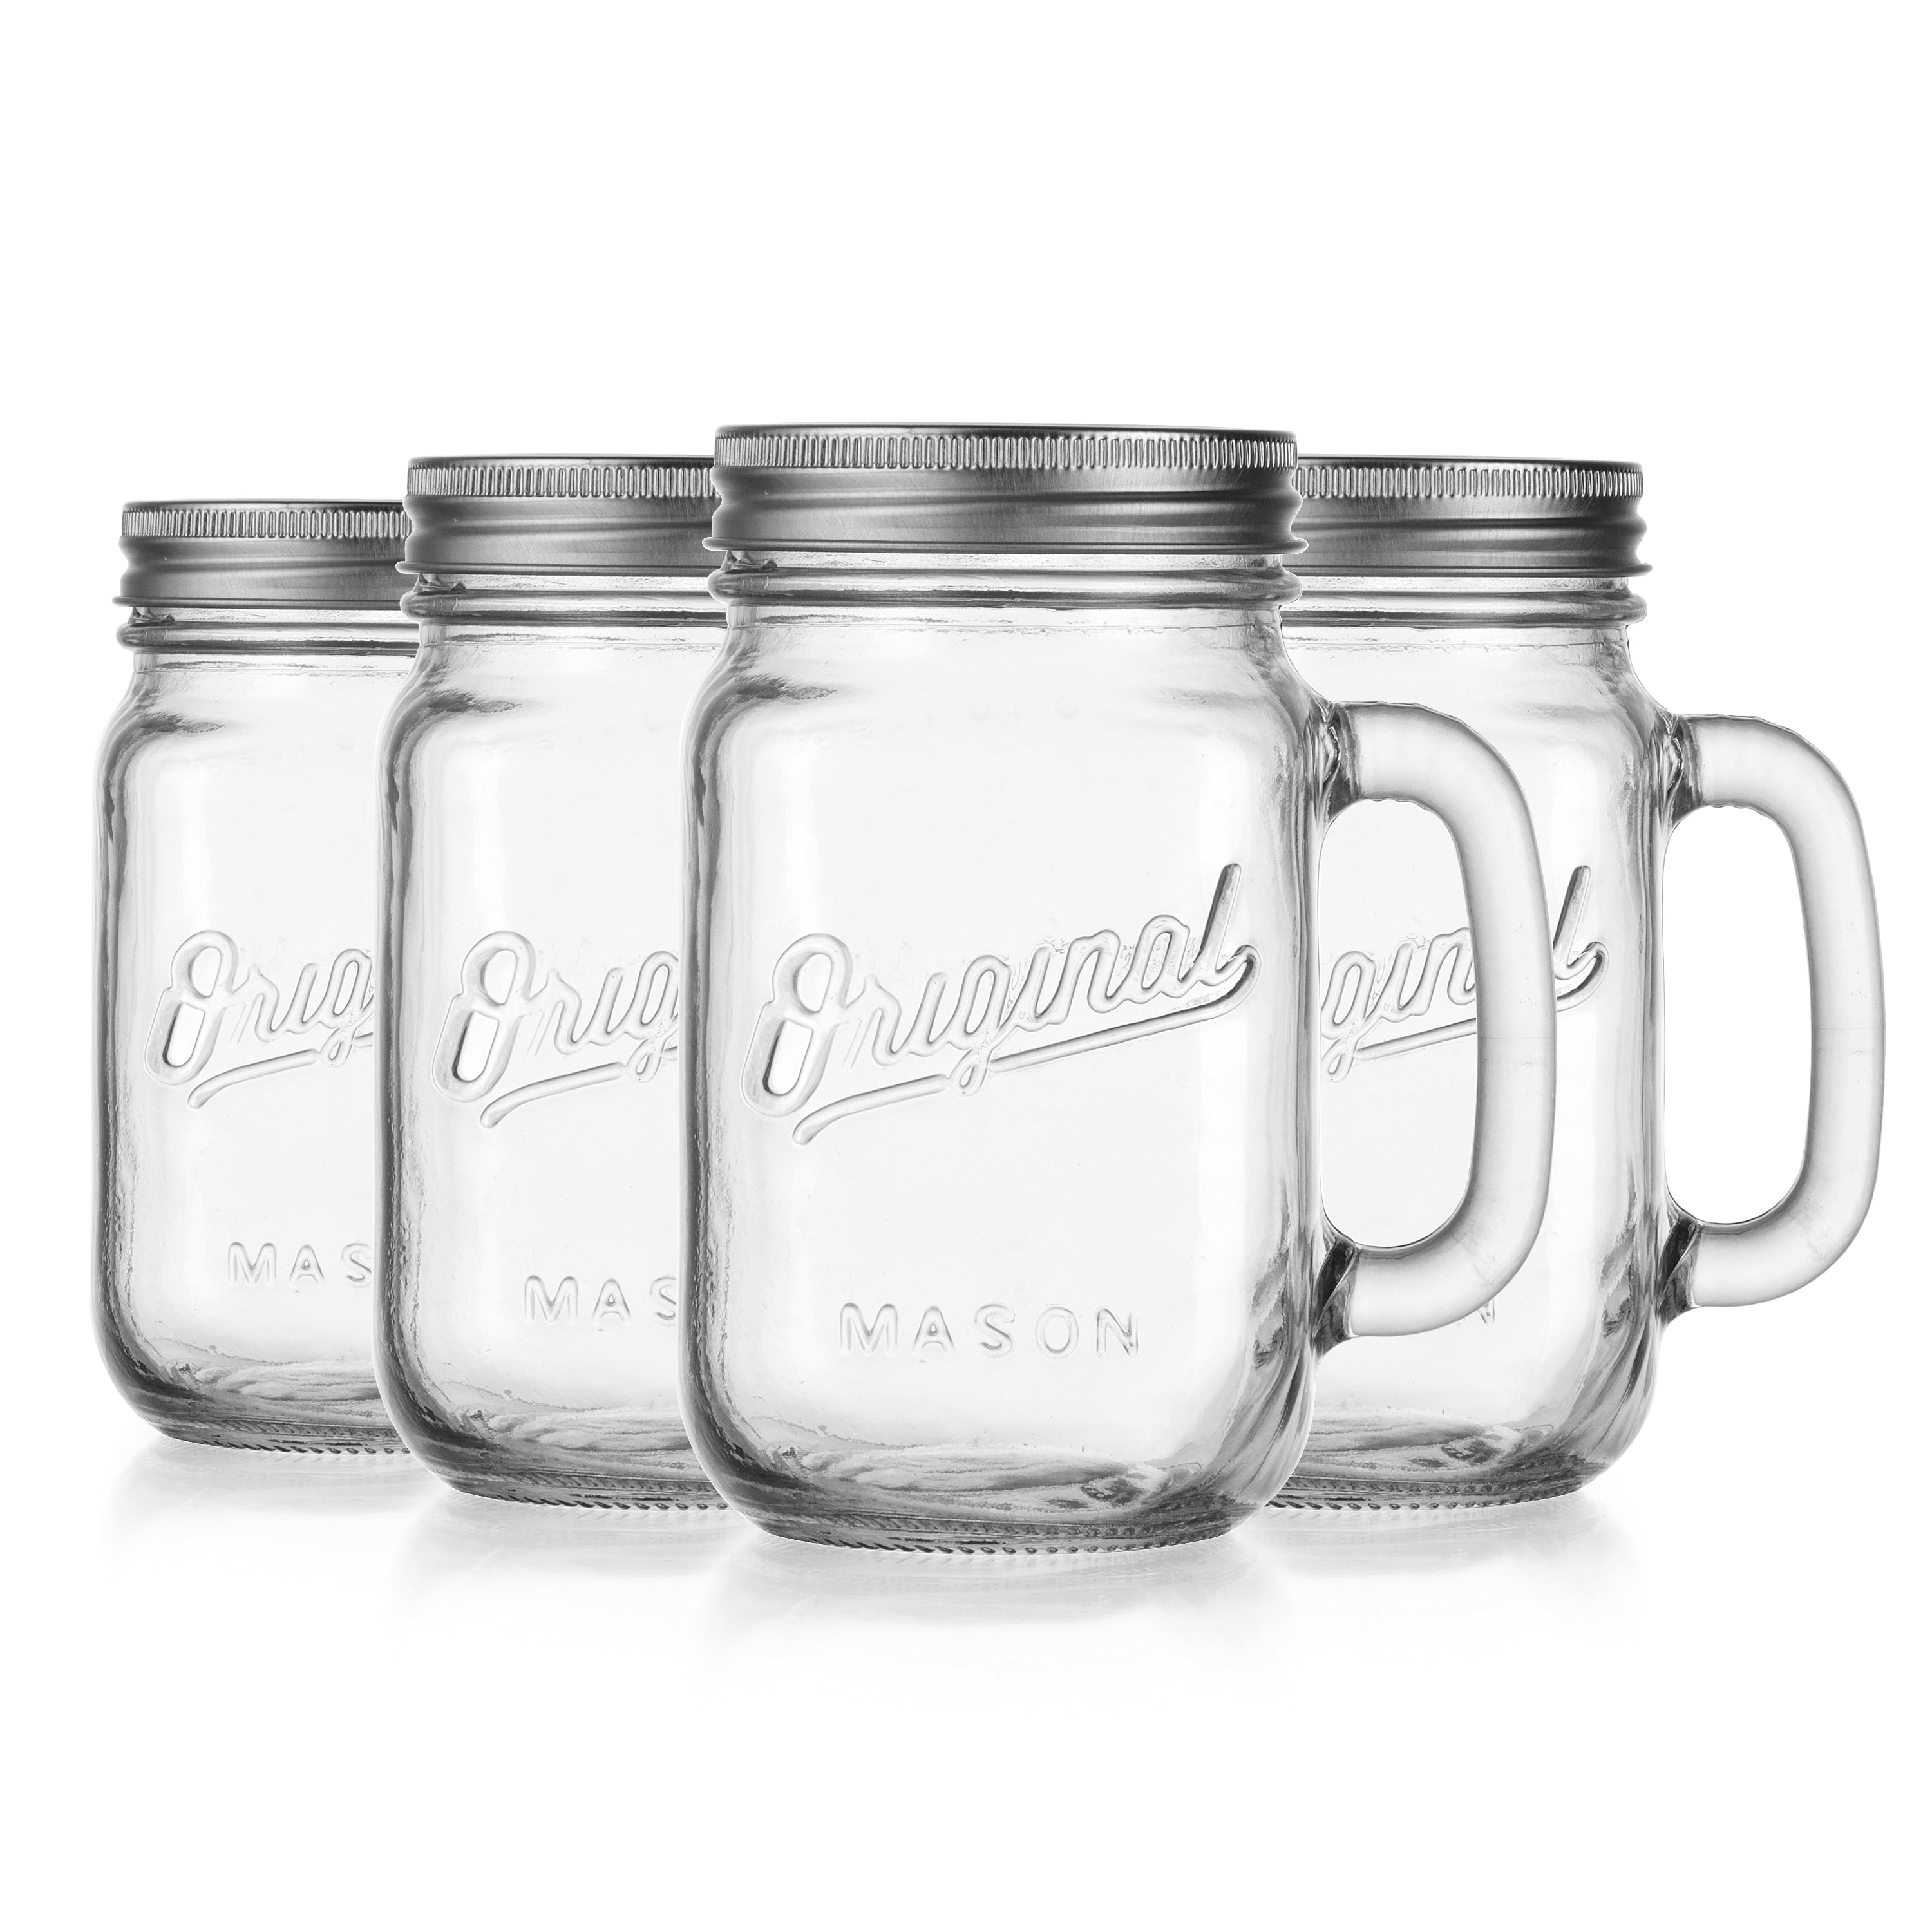 DESIYUE 9 Pack 16 Oz Mason jar Drinking Glasses, Mason Mugs with Handle,  Old Fashioned Regular & Gla…See more DESIYUE 9 Pack 16 Oz Mason jar  Drinking